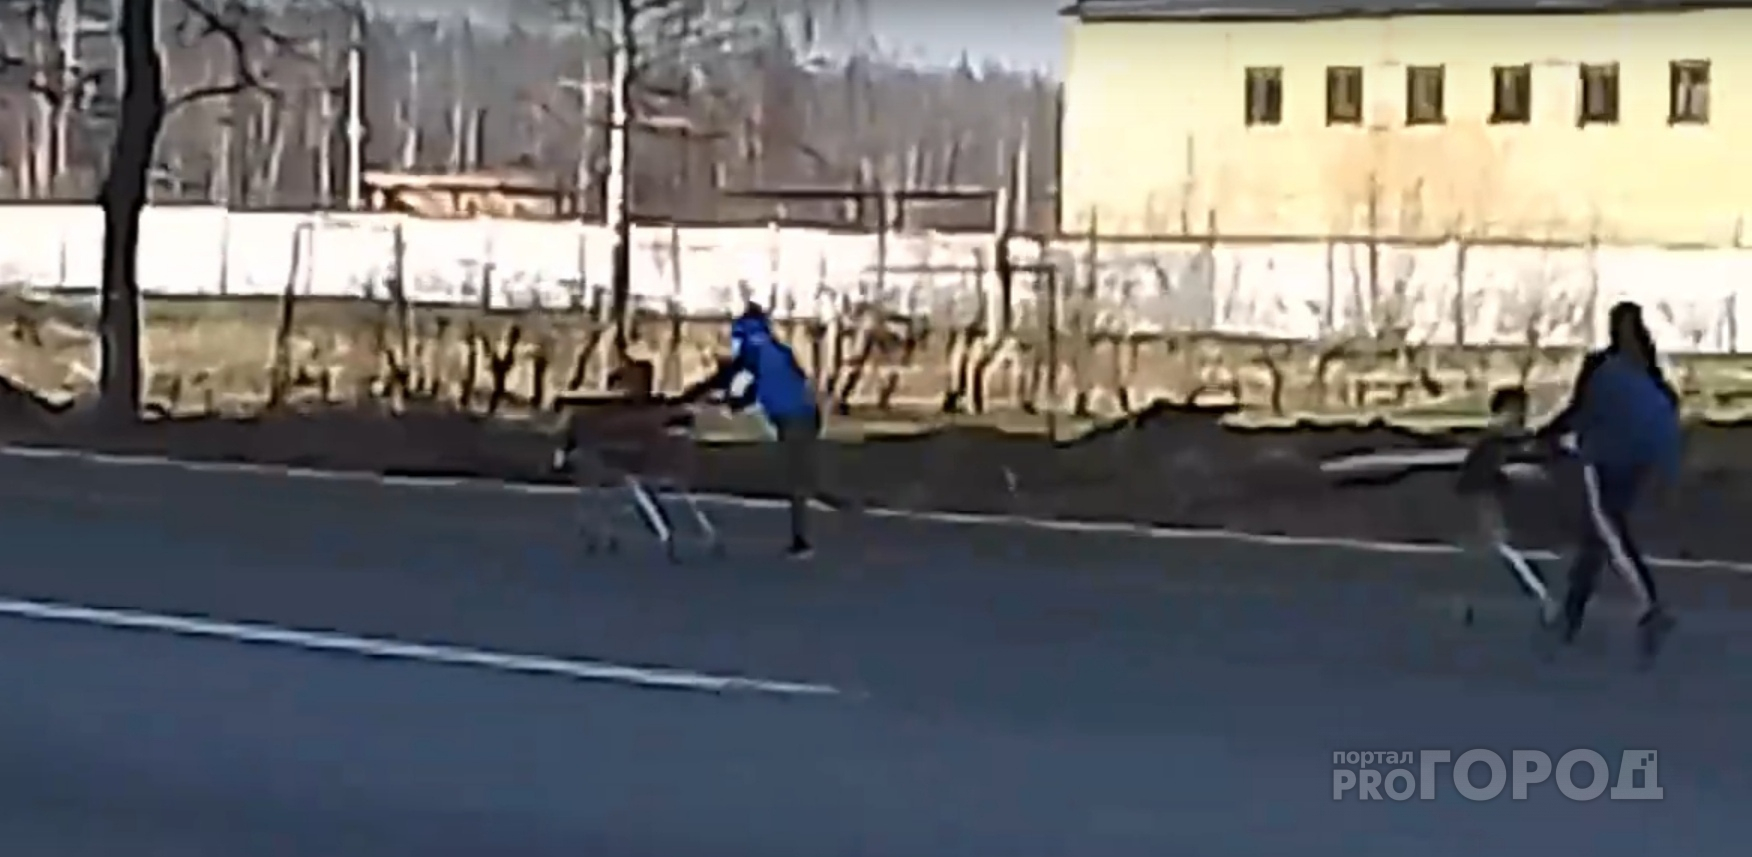 Форсаж по-брагински: ярославские подростки устроили гонку на тележках на дороге